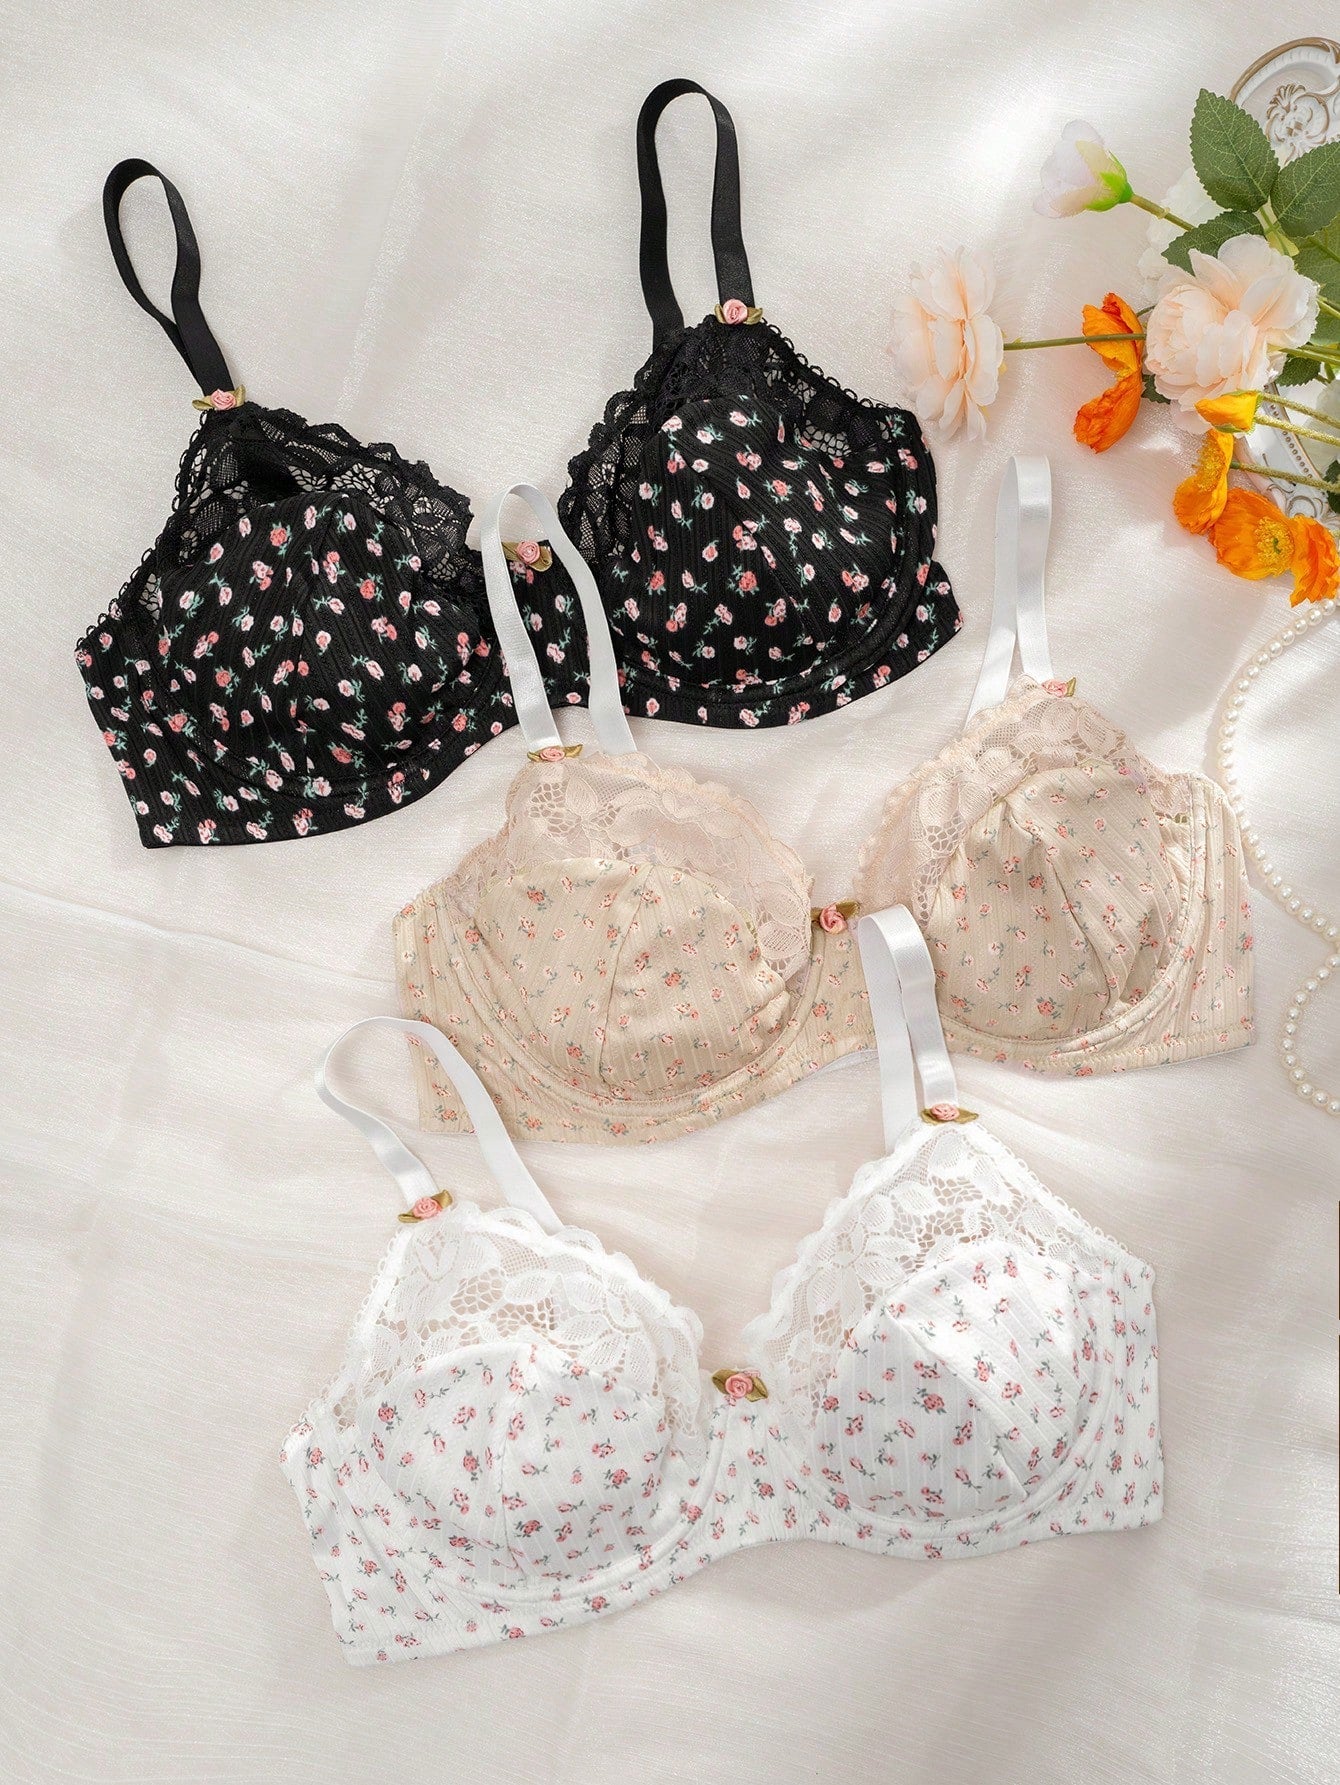 Plus Size Cute Lingerie Set, Women's Plus Ditsy Floral Print Contrast Lace  Bra & Panty Lingerie Two Piece Set